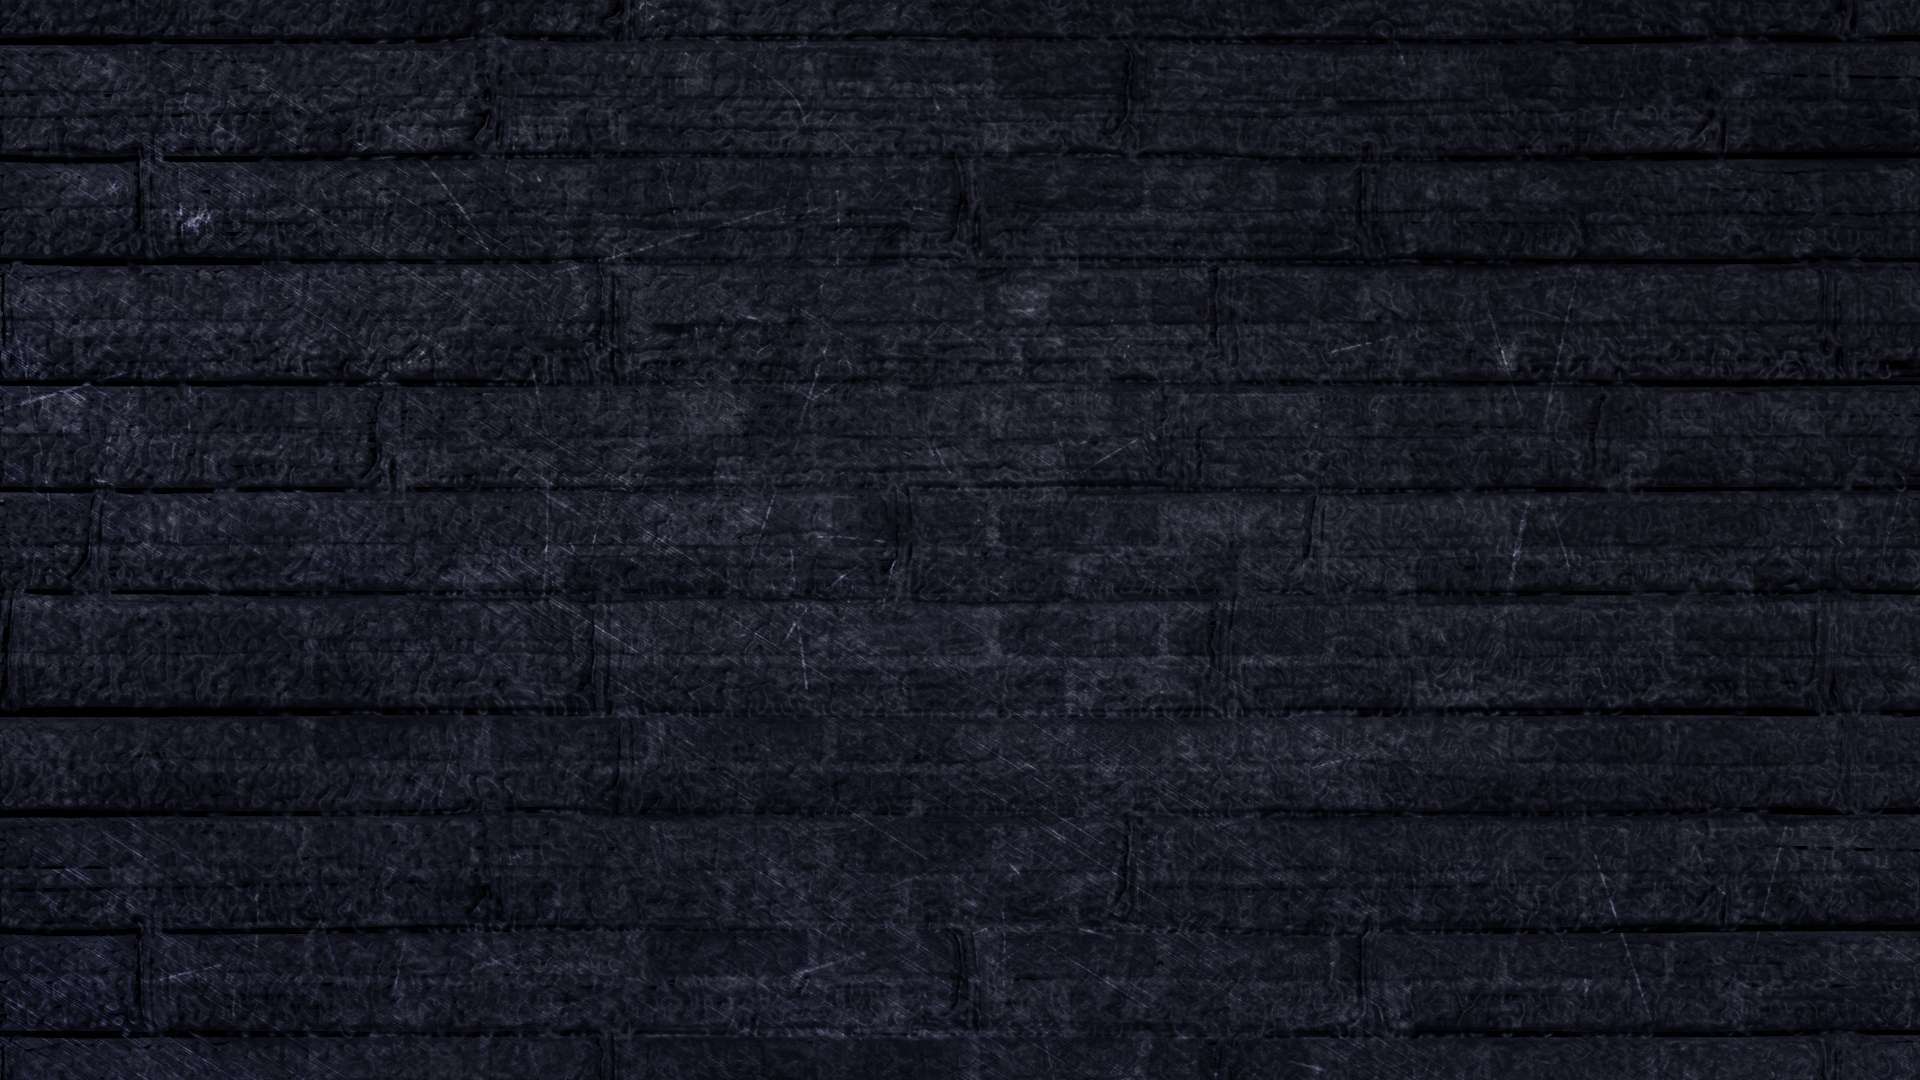  Black  HD  Wallpapers  1080p WallpaperSafari